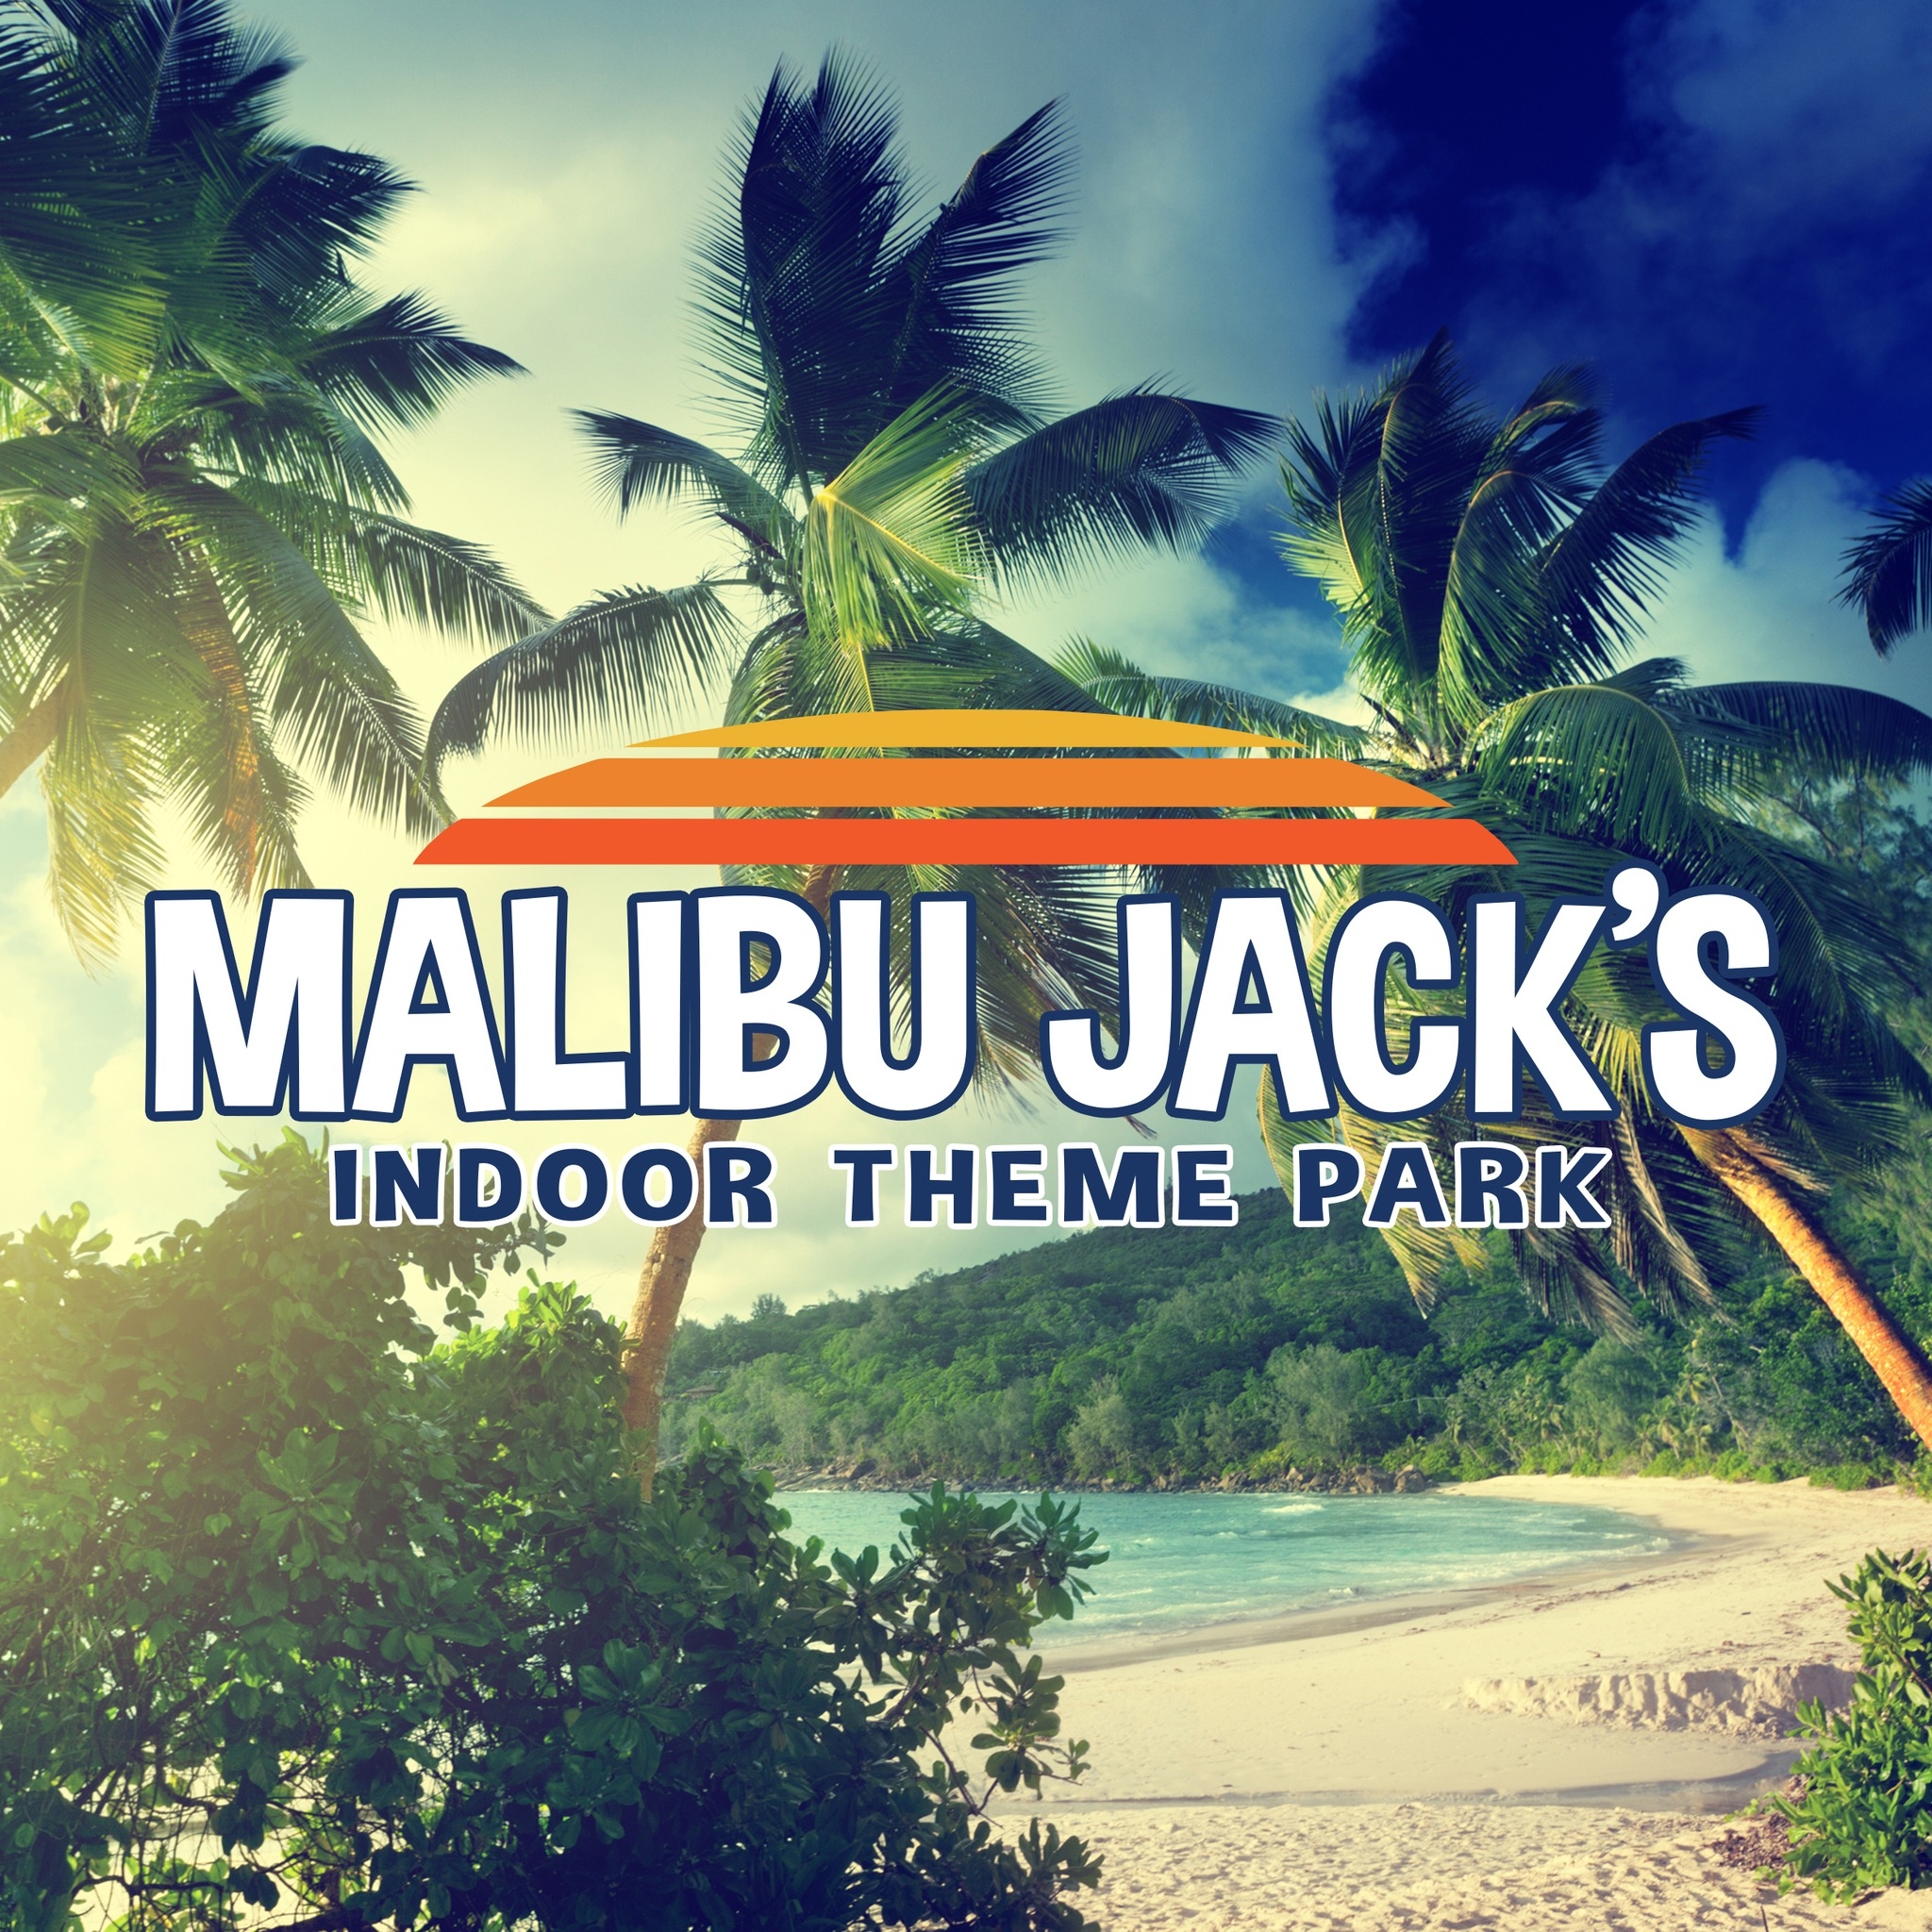 Malibu Jack's